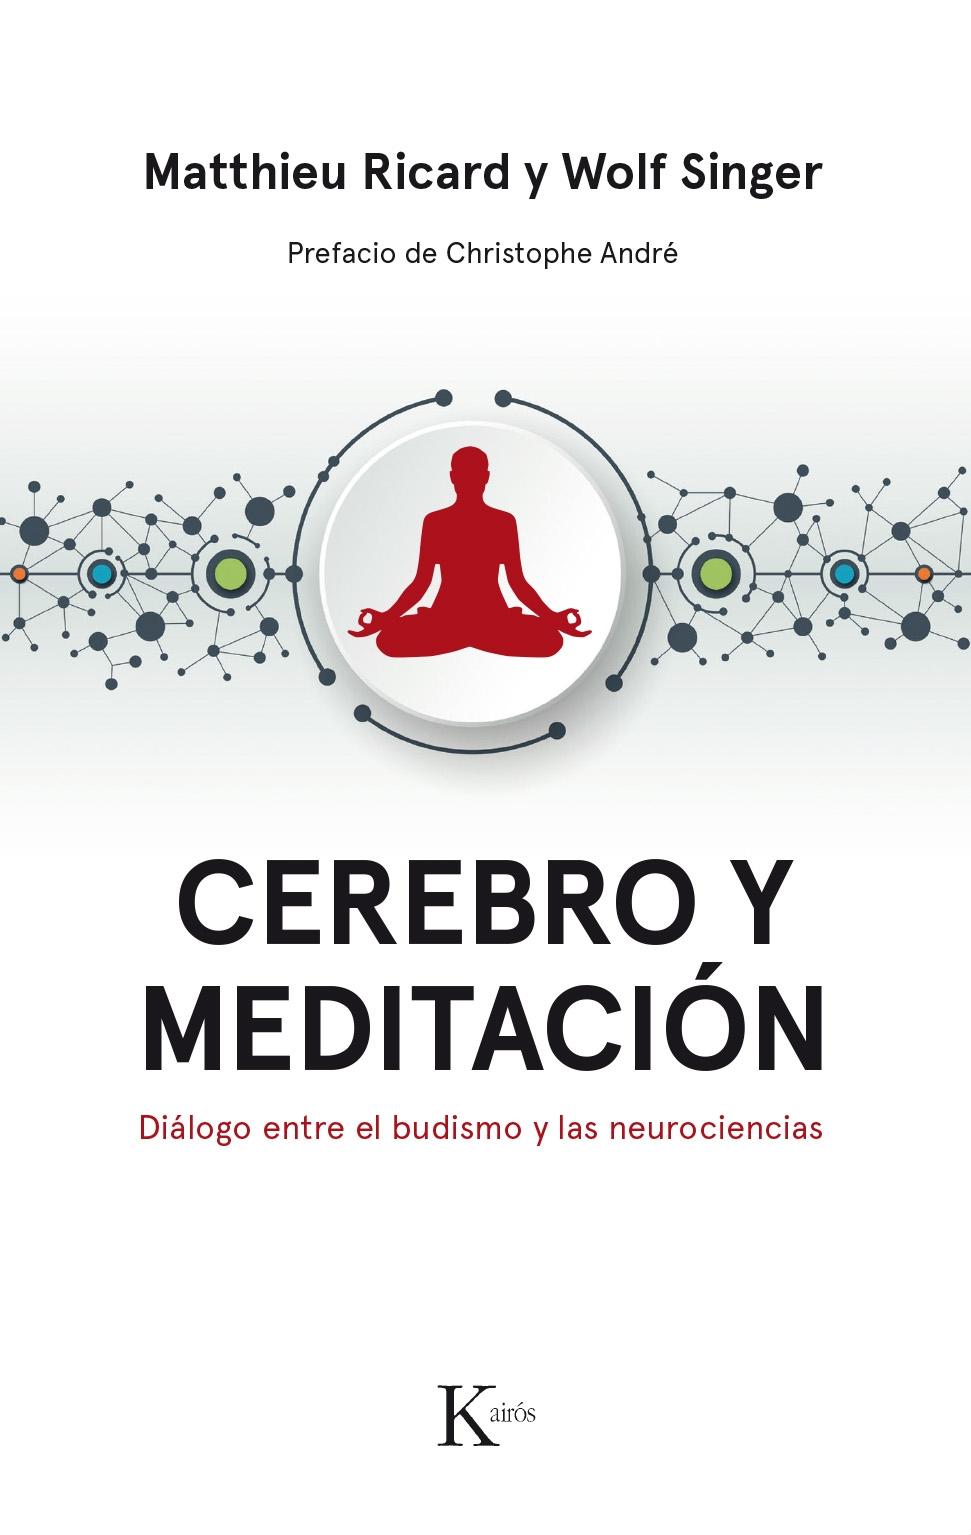 Cerebro y Meditación "Diálogo Entre el Budismo y las Neurociencias"